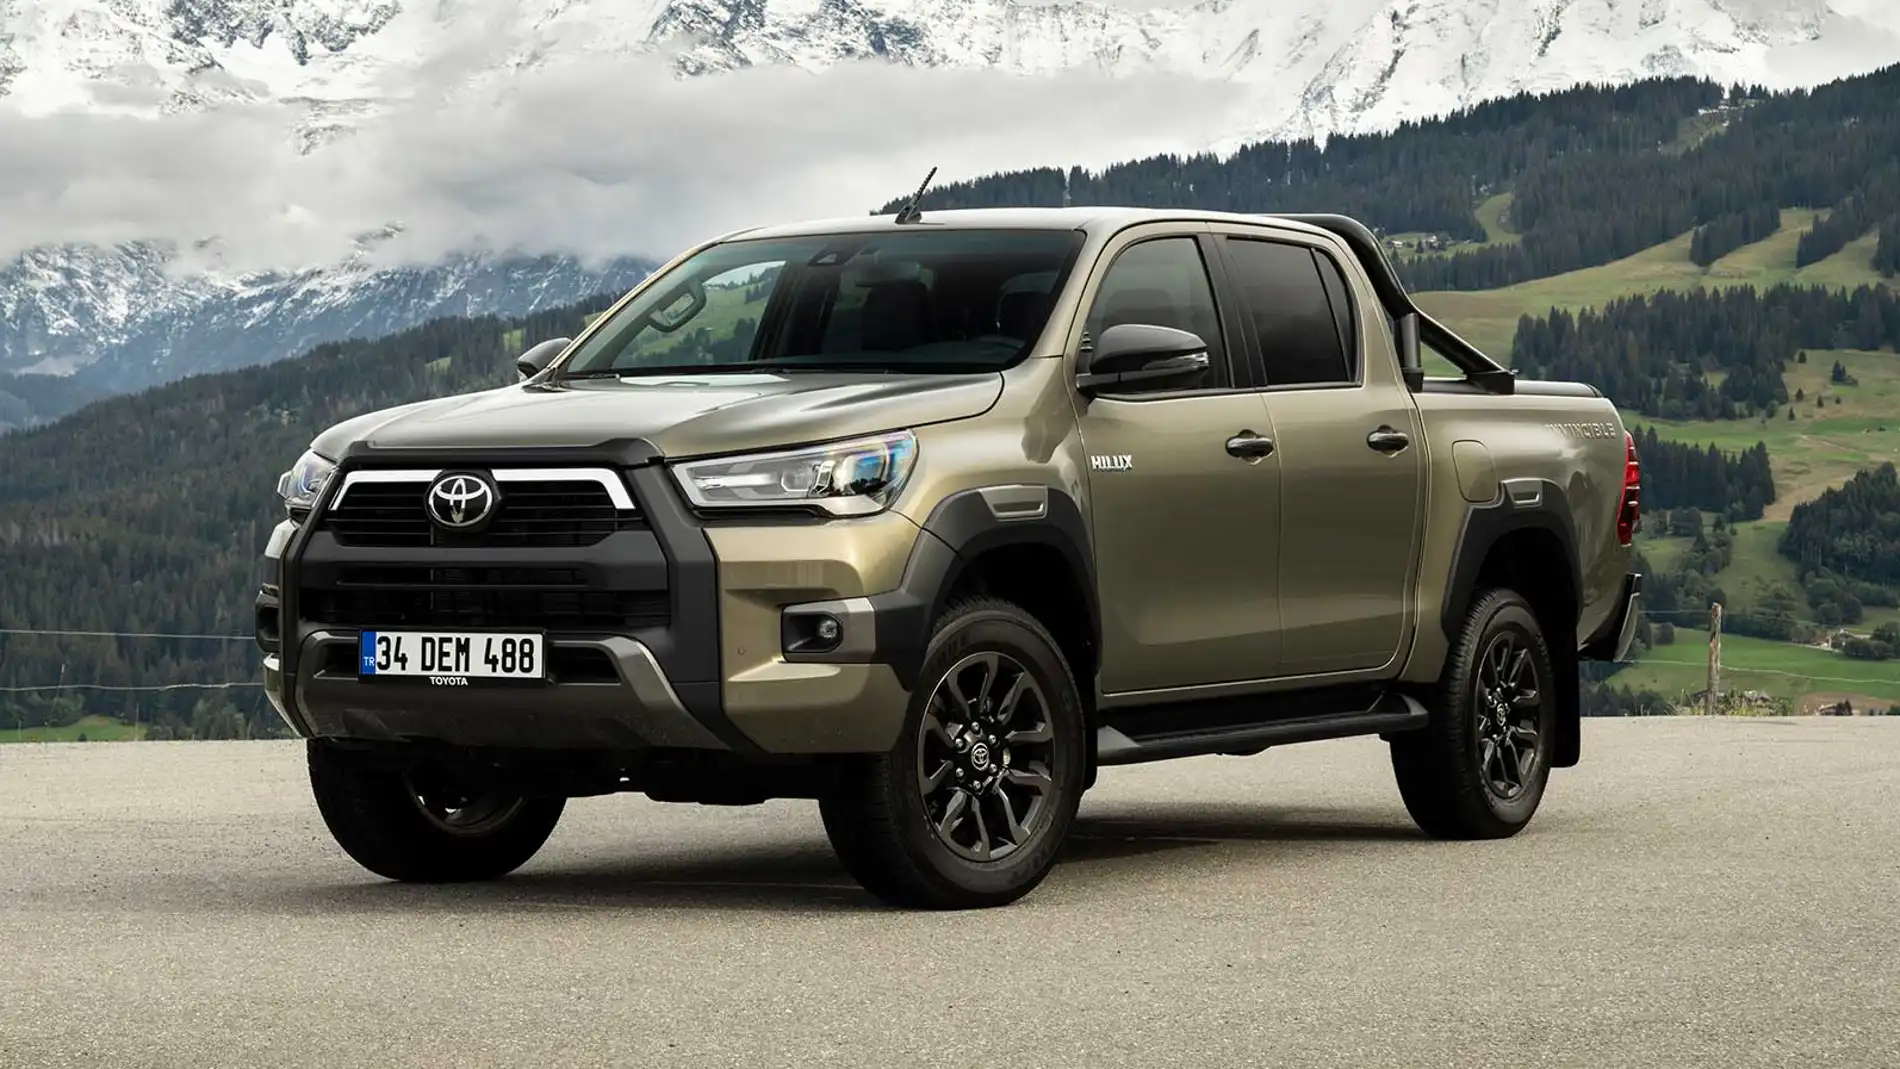 Ya está la venta la nueva Toyota Hilux desde 31.715 euros